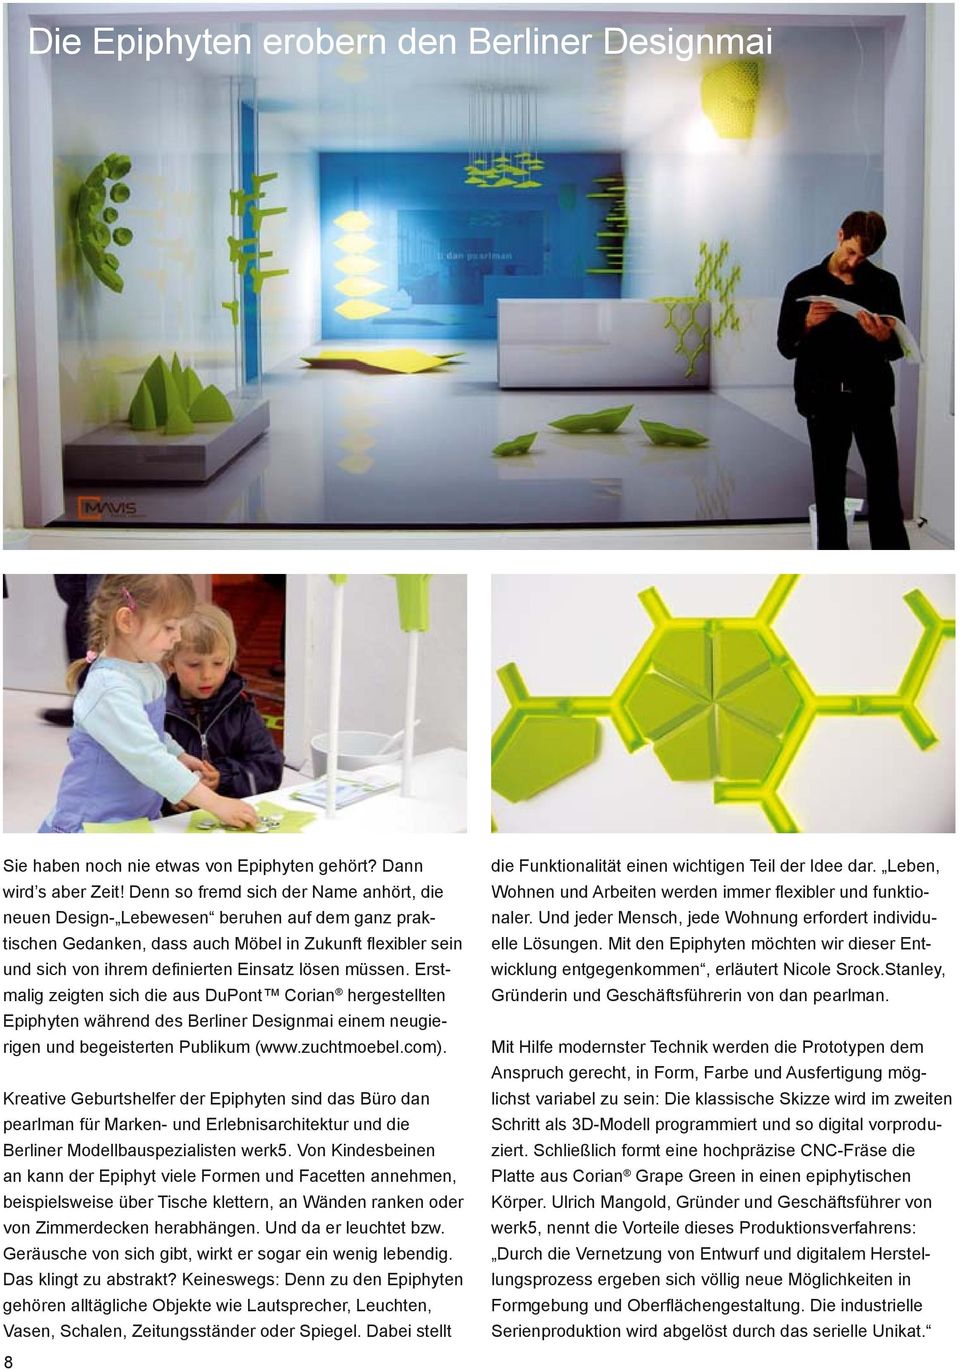 müssen. Erstmalig zeigten sich die aus DuPont Corian hergestellten Epiphyten während des Berliner Designmai einem neugierigen und begeisterten Publikum (www.zuchtmoebel.com).